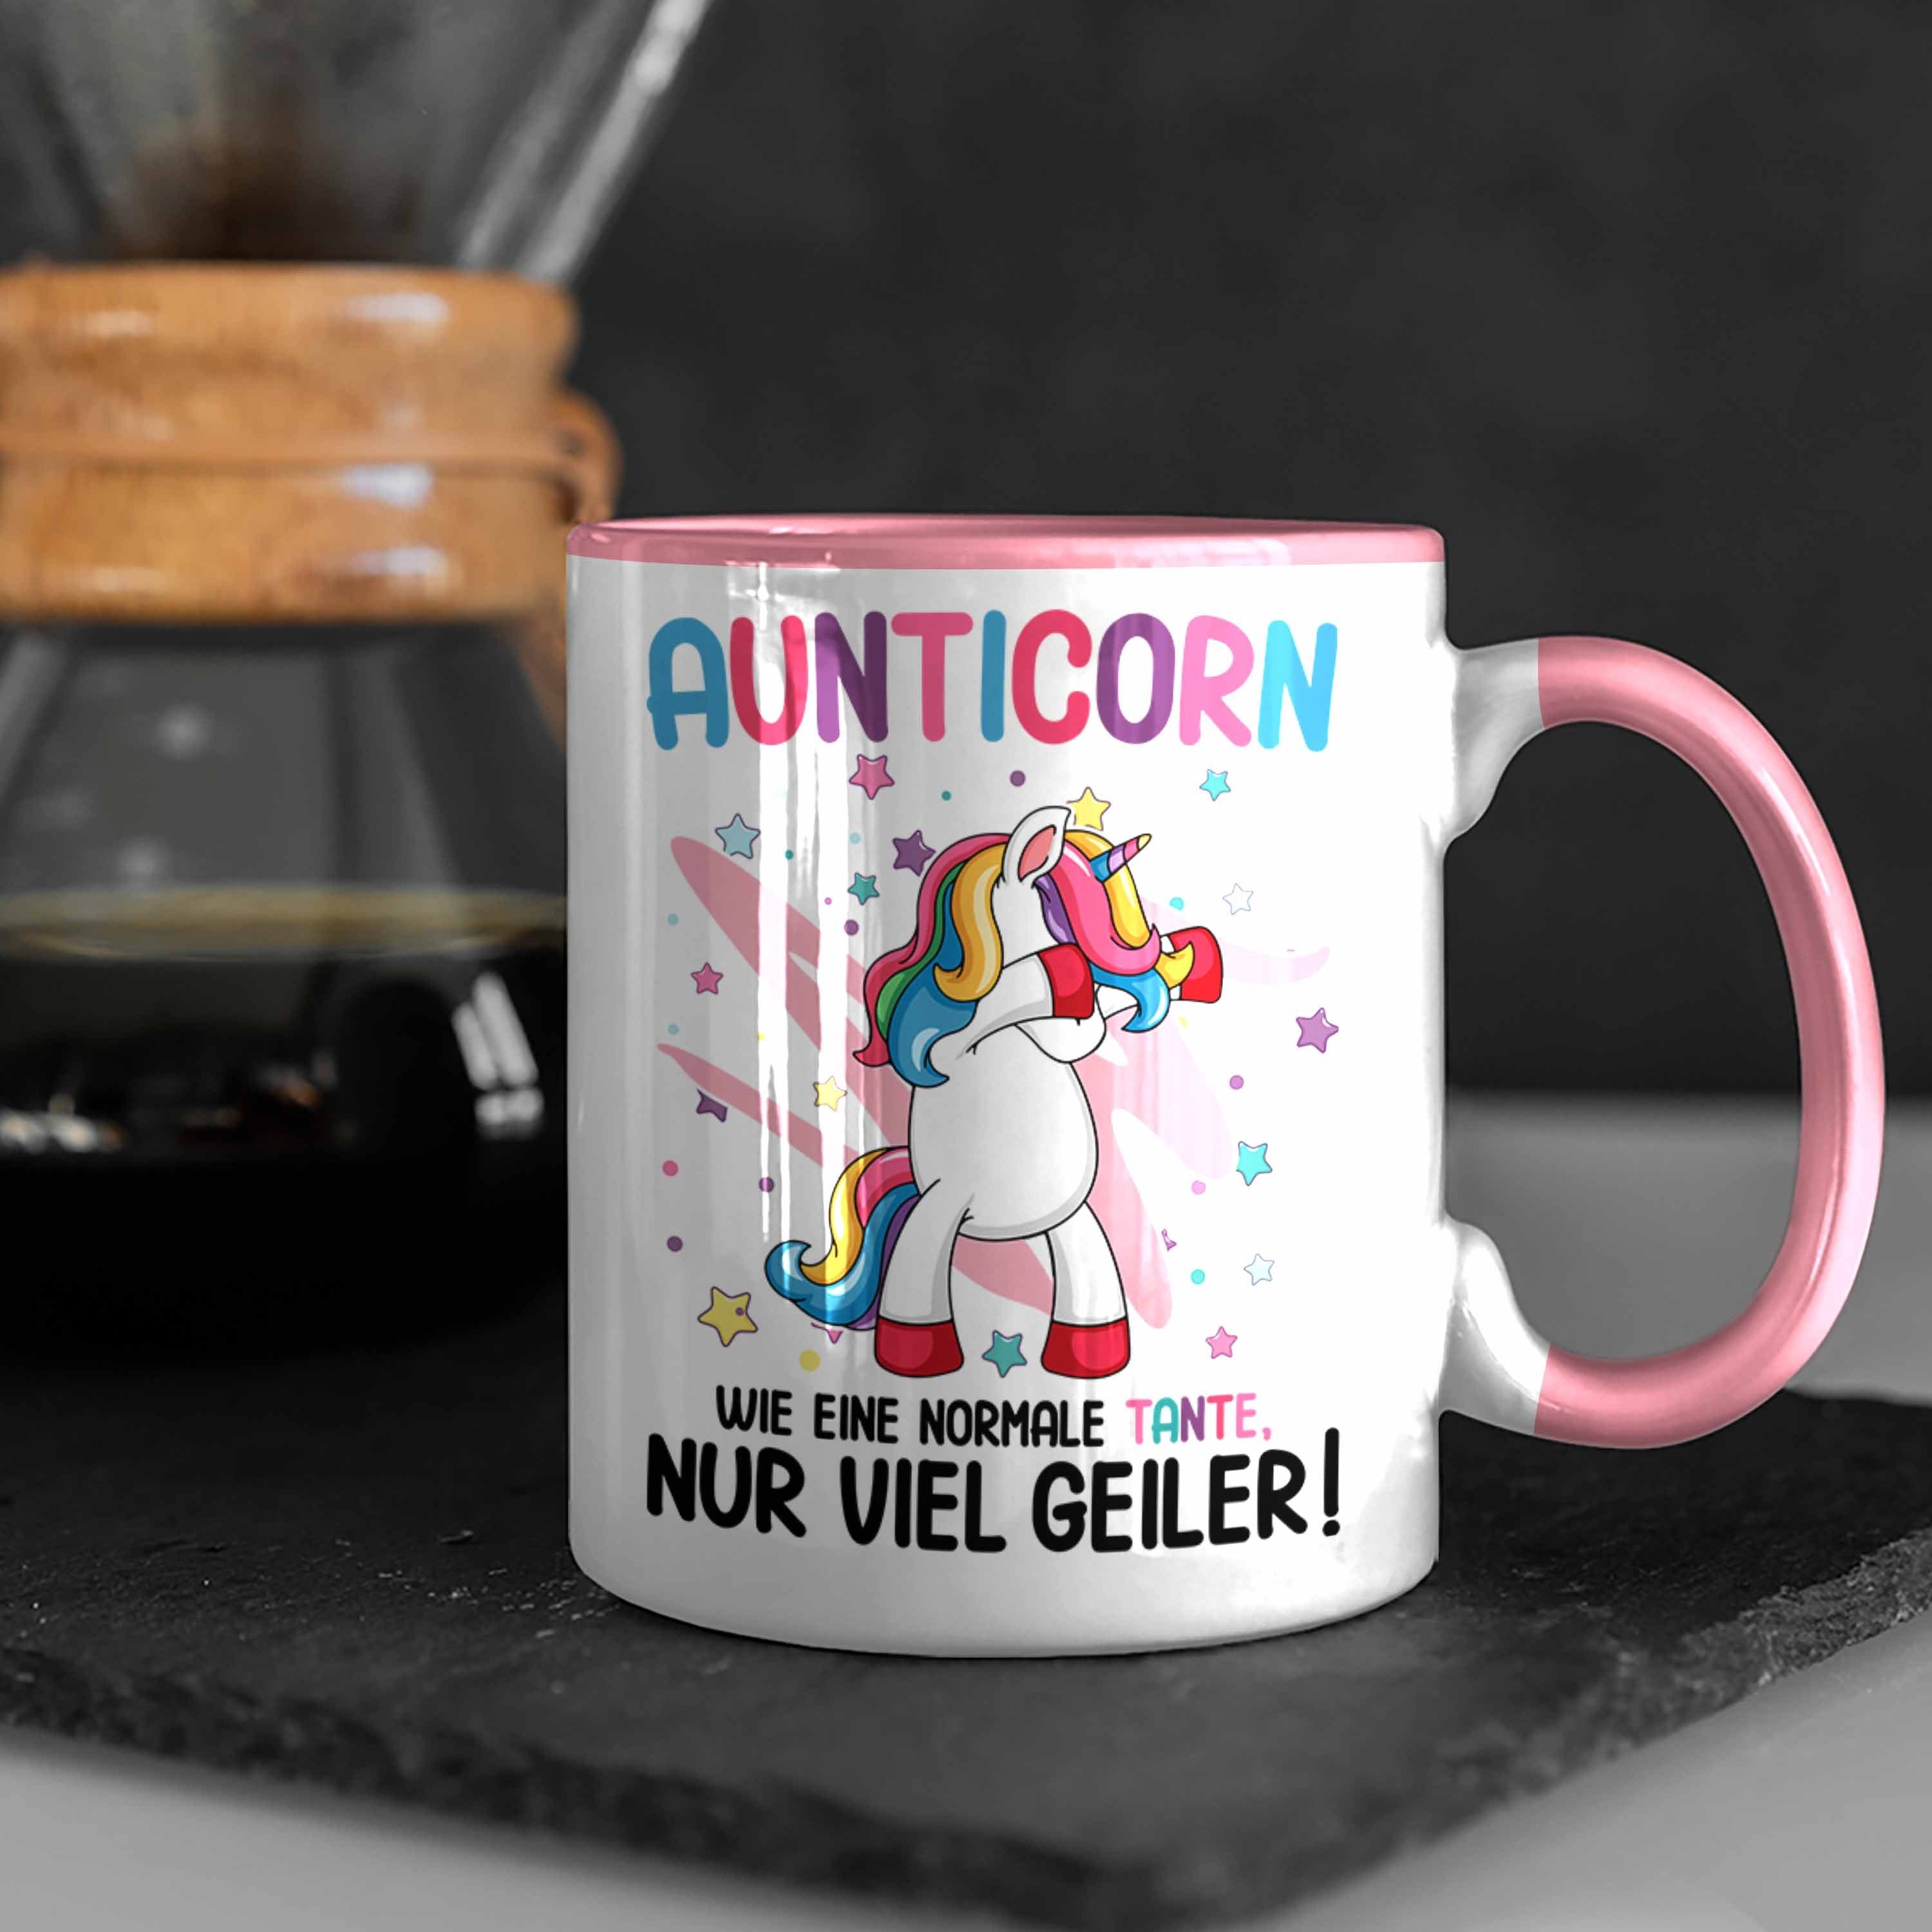 Trendation Tasse Einhorn Normale Tante Geburtstag Tante Wie Rosa Geschenk Beste Spruch Eine Lustig - Aunticorn Trendation